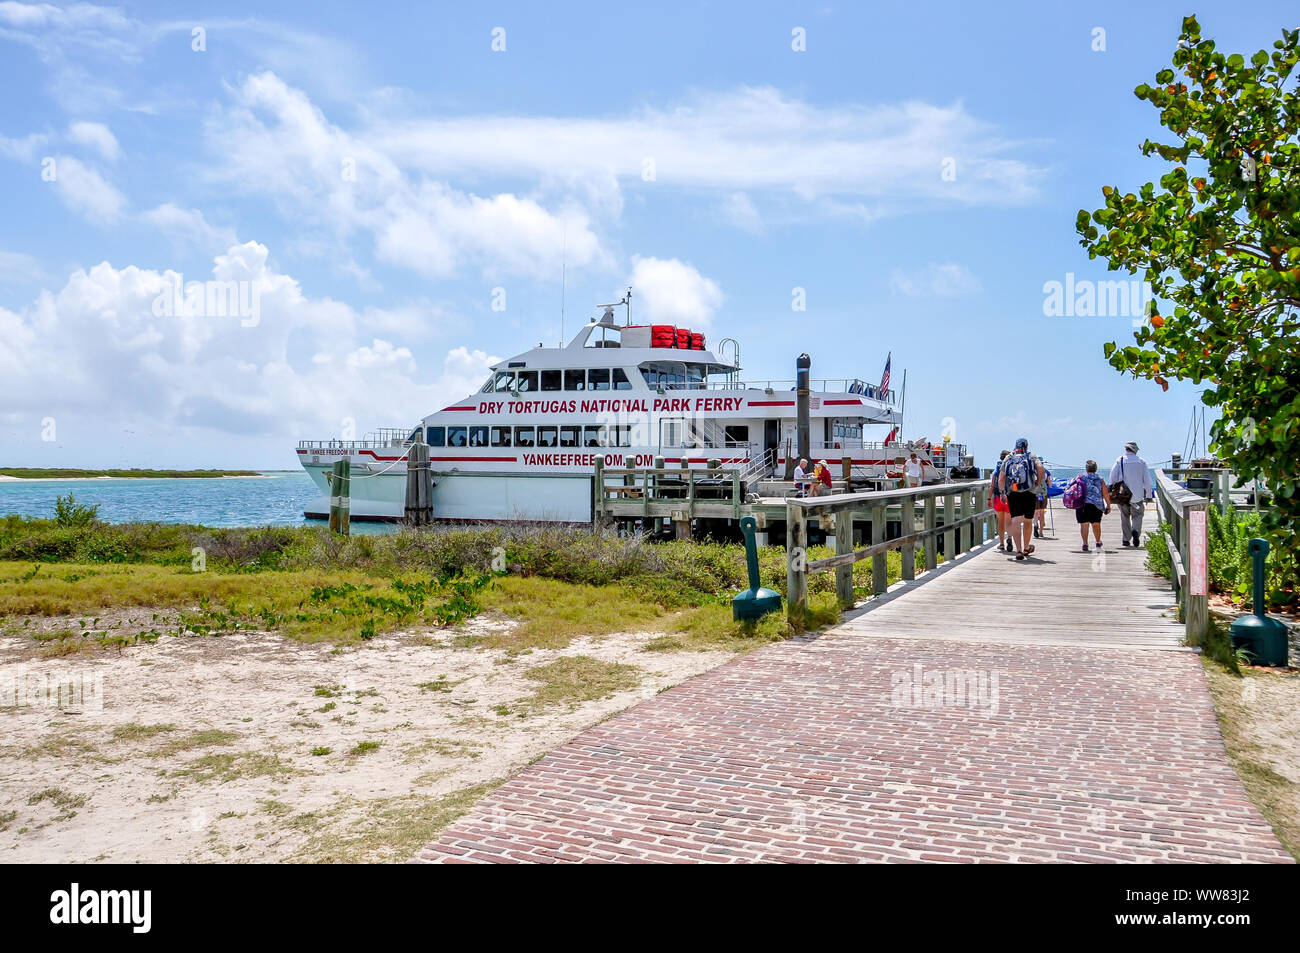 Traghetto che serve Parco Nazionale di Dry Tortugas da Key West, Florida. Le persone a bordo del traghetto vicino a Fort Jefferson dopo un giorno di viaggio per l'isola. Foto Stock